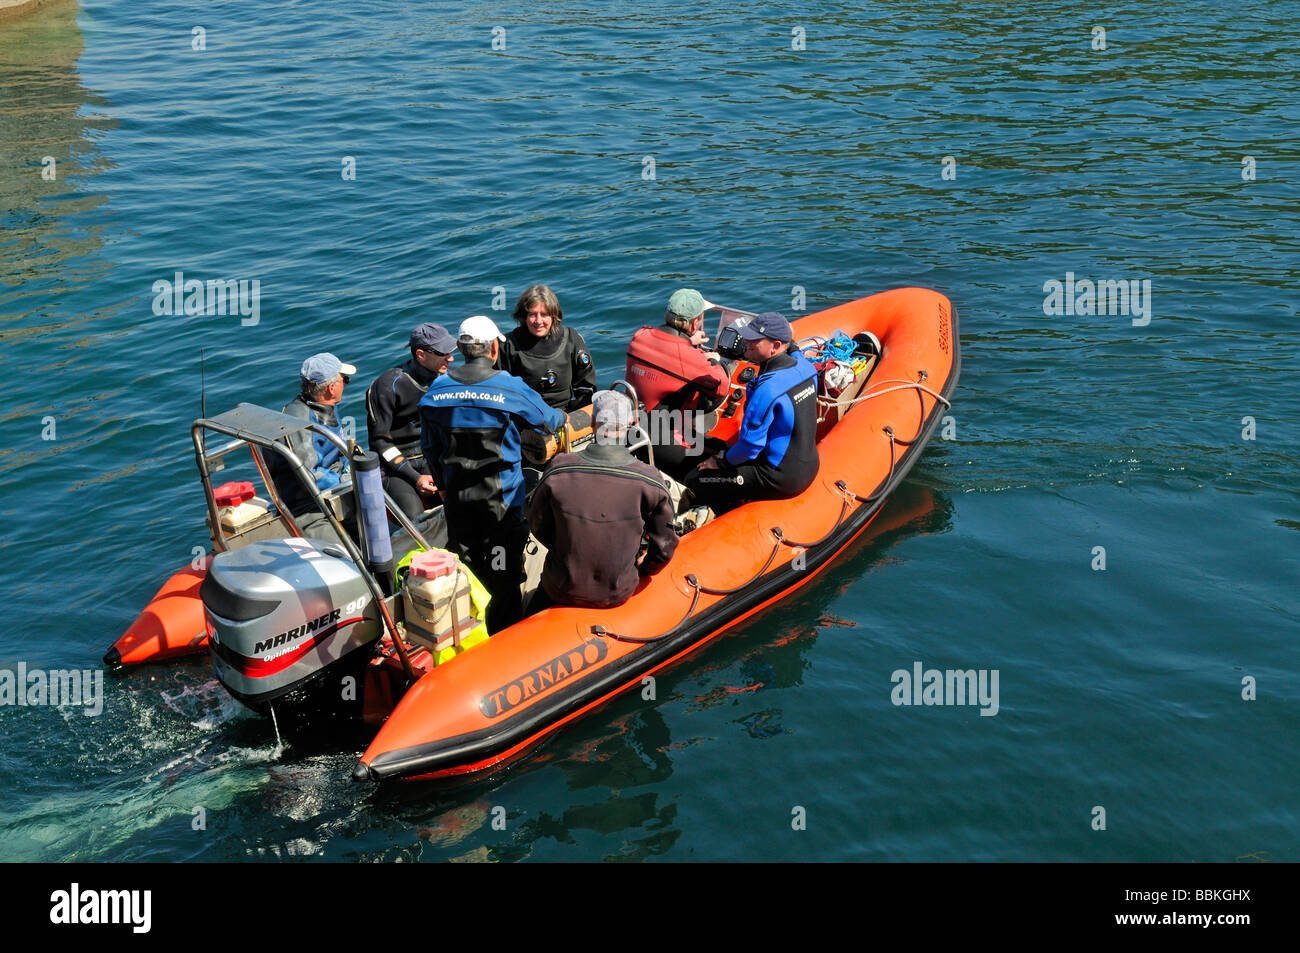 Les amateurs de plongée sous-marine sur les côtes orange à moteur hors-bord rempli de gens l'accélération sur l'eau Banque D'Images